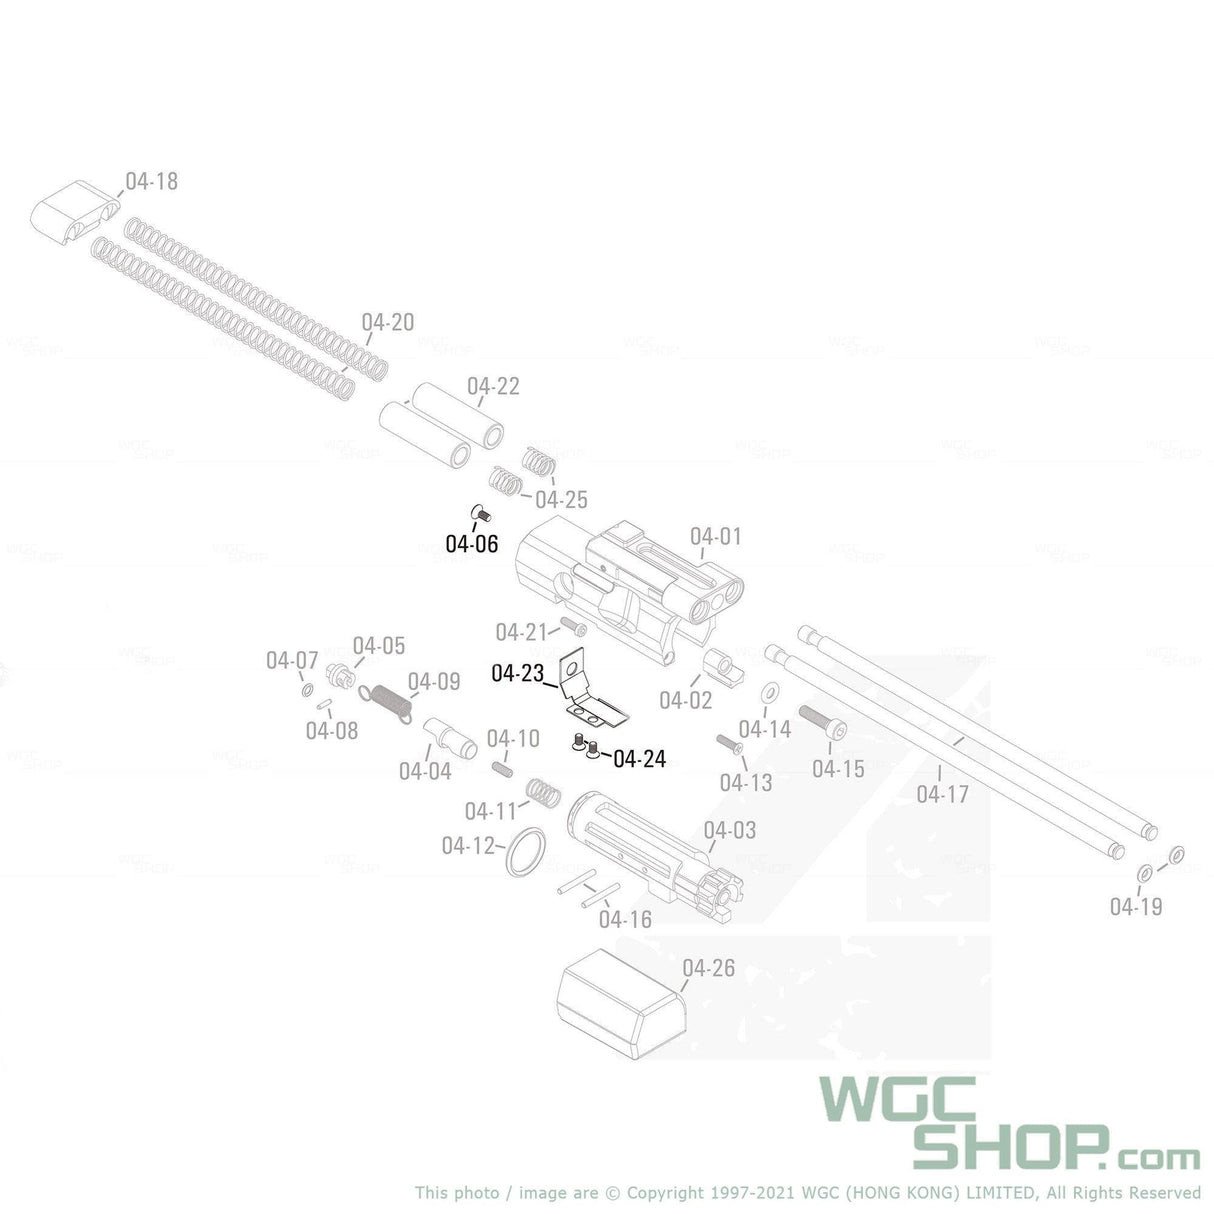 APFG Original Parts - MPX GBB Bolt Reinforcement with Screws ( 04-23 / 04-24 x 2 / 04-06 ) - WGC Shop